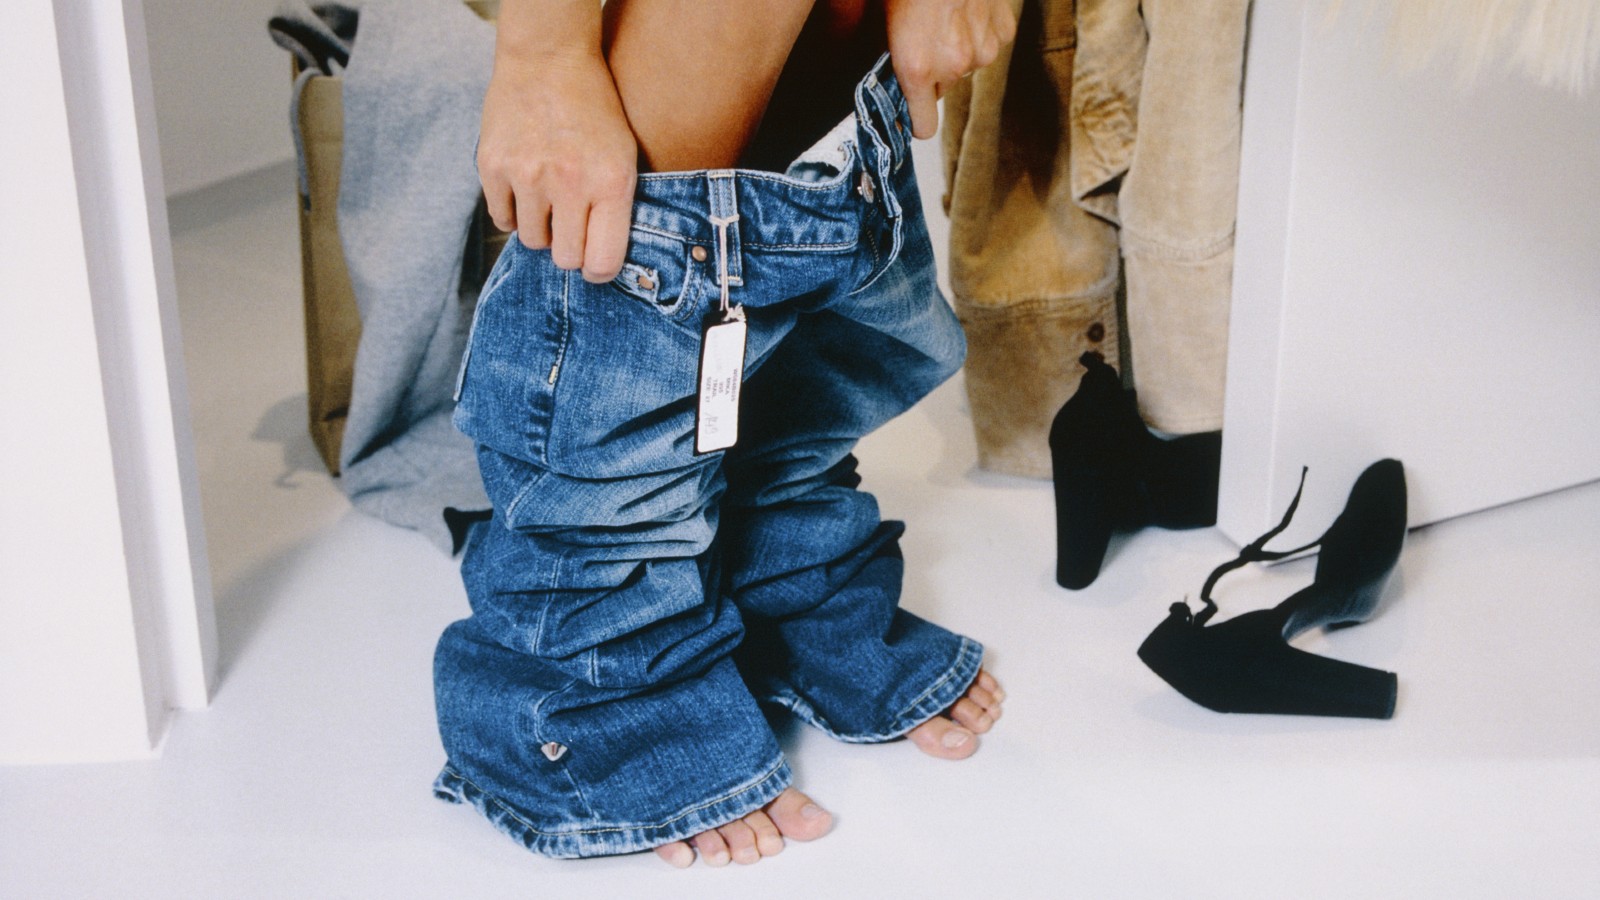 wearing pants under jeans｜TikTok Search